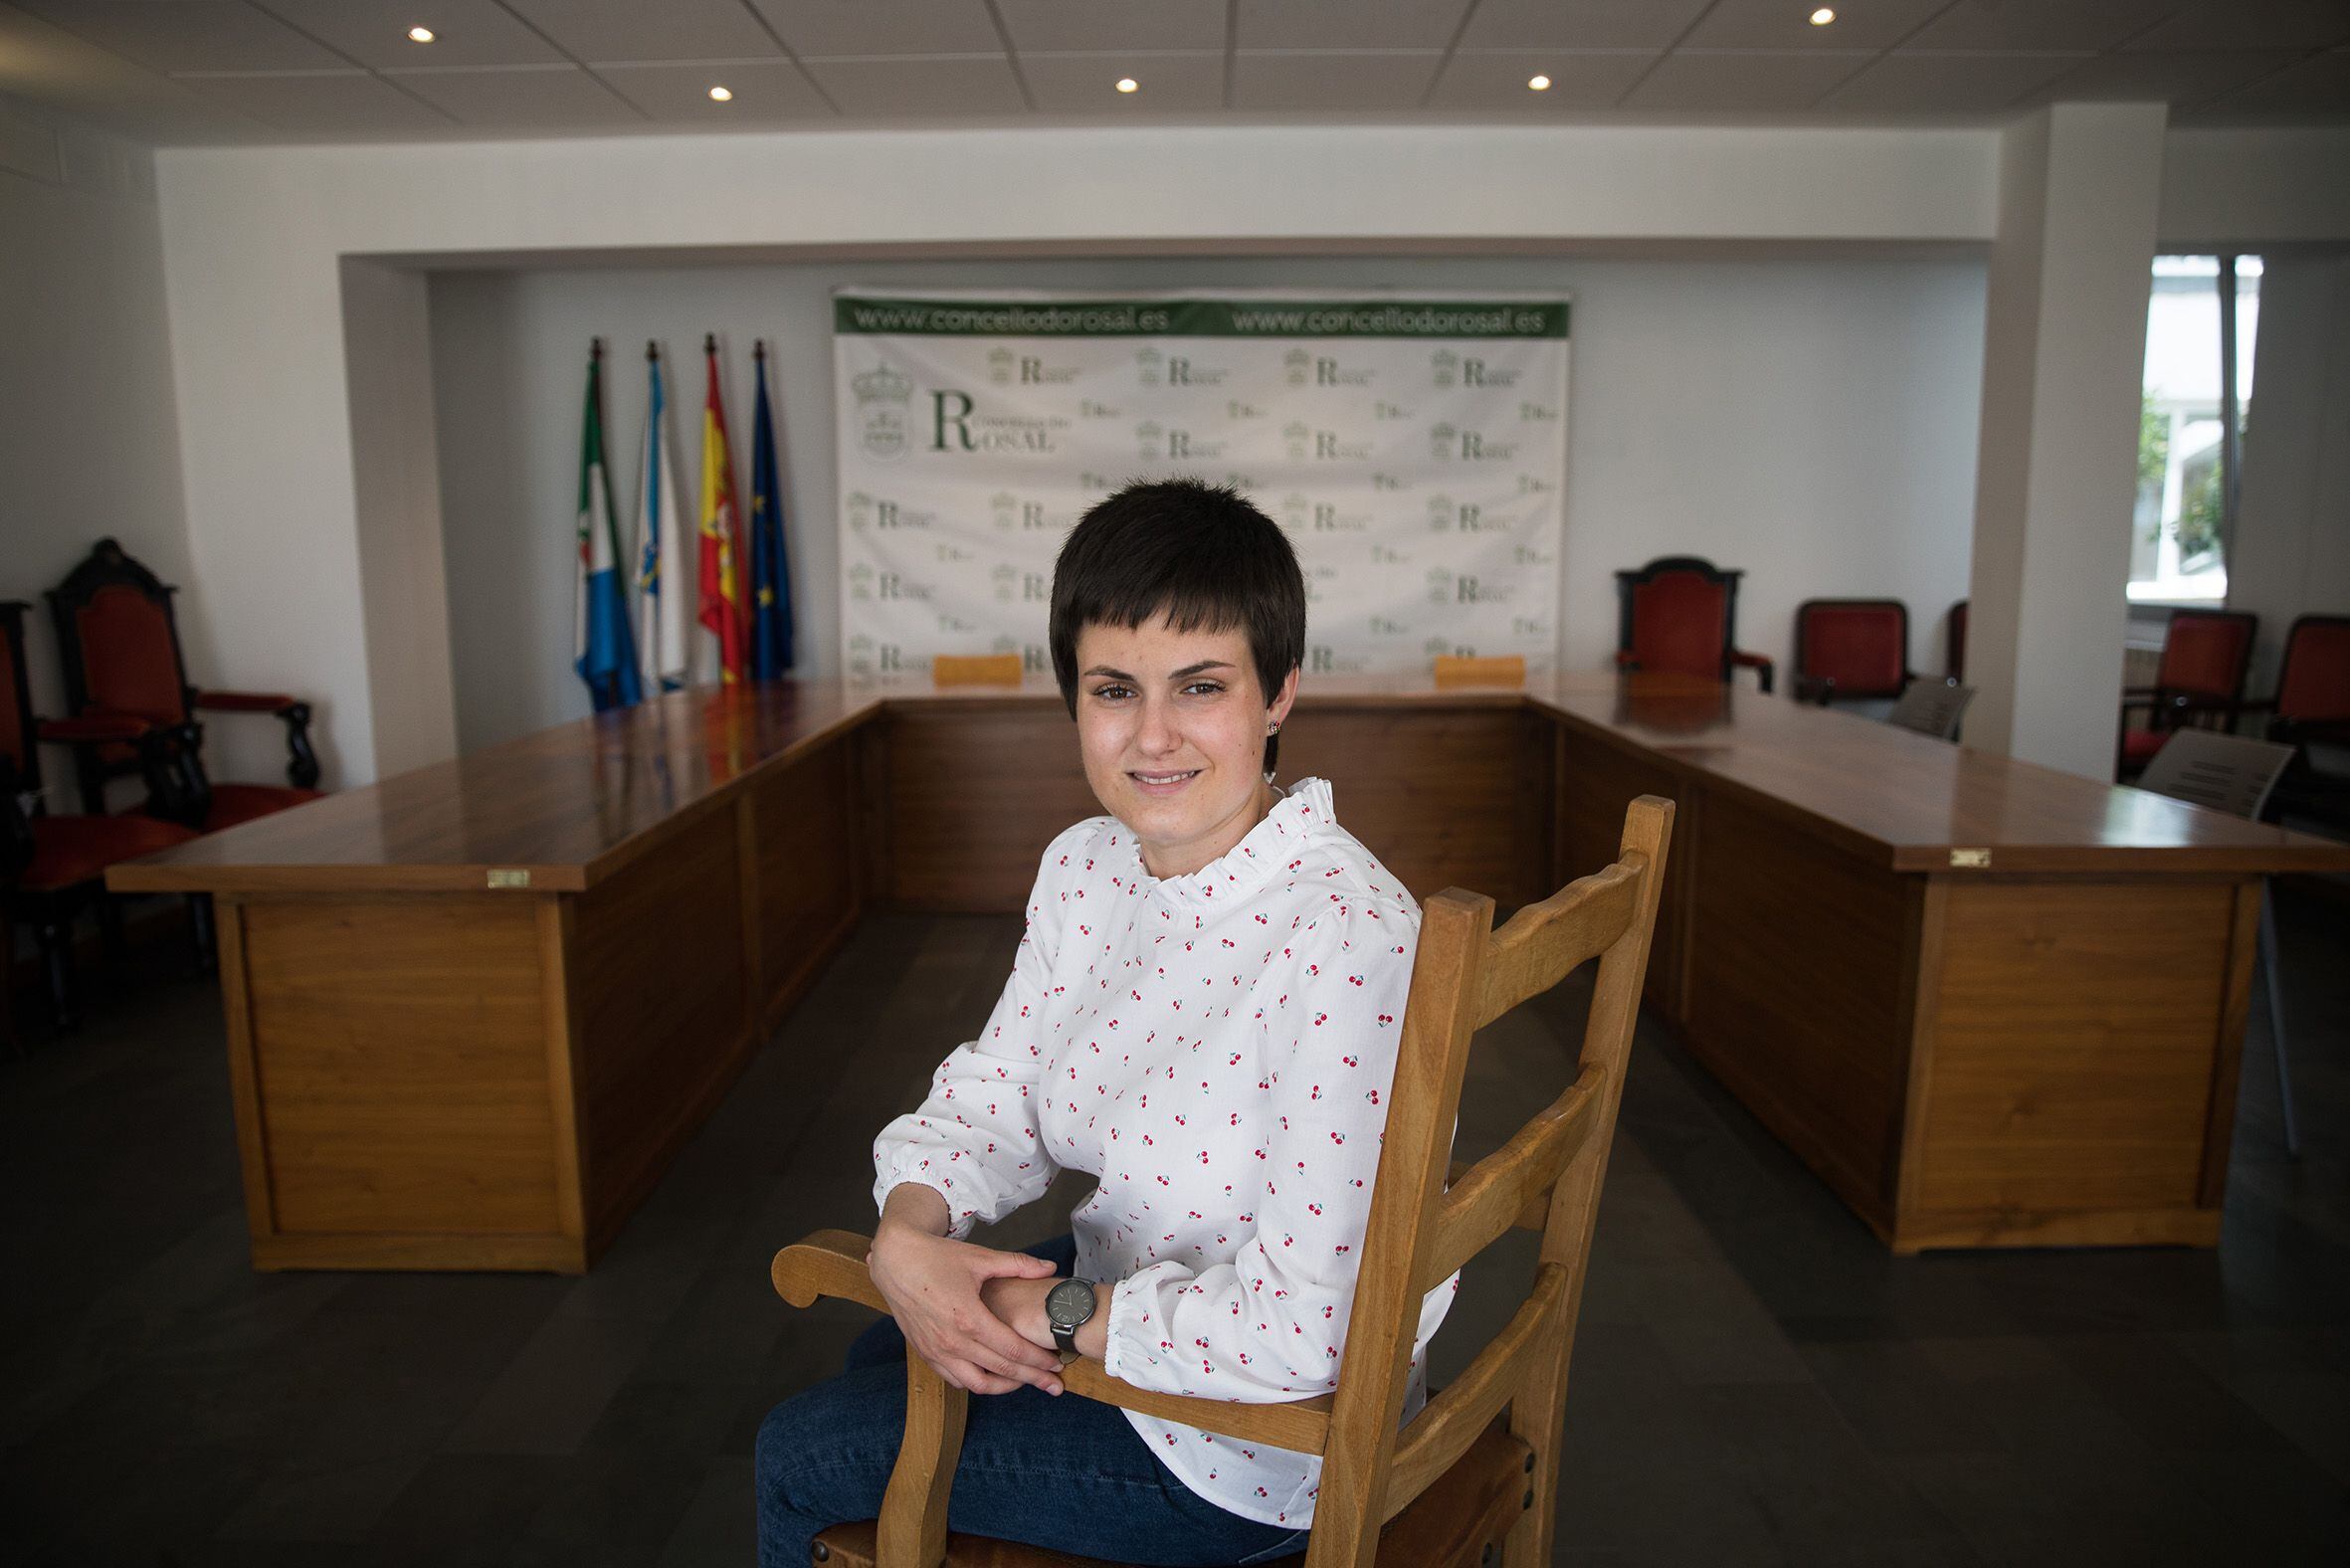 Ánxela Fernandez, alcaldesa de O Rosal (Pontevedra), una de las más jóvenes del BNG. 